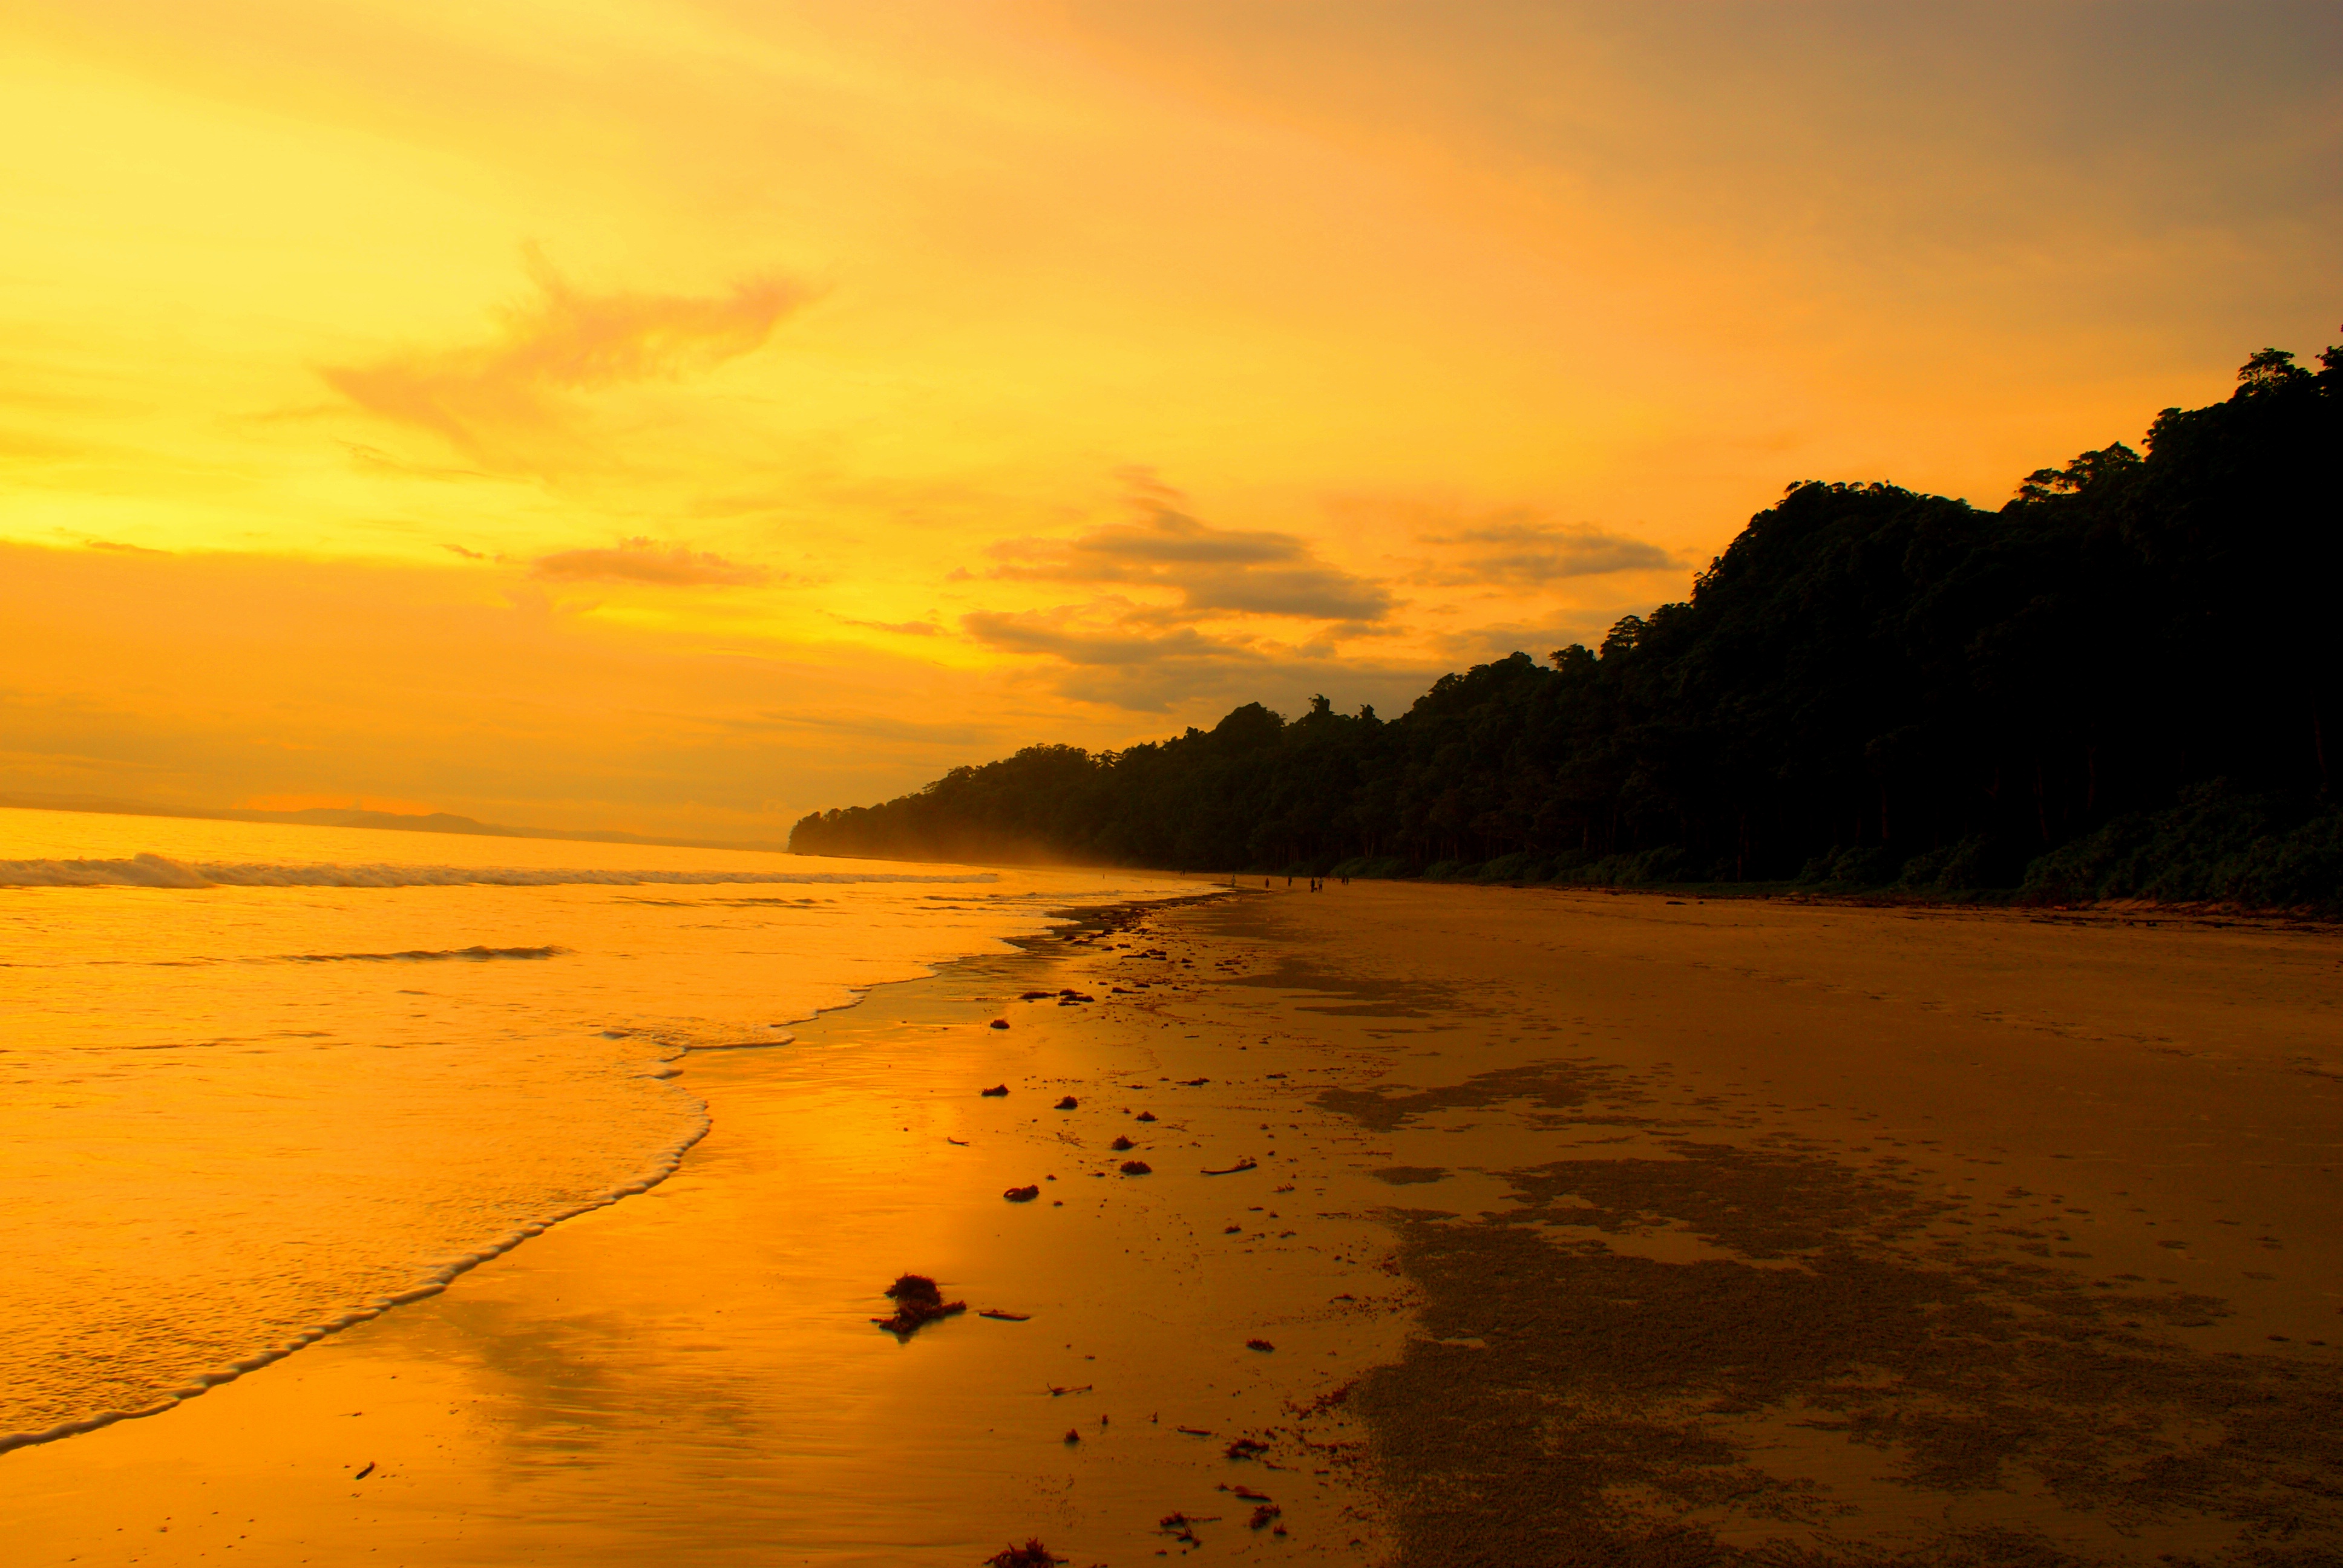 File:Radhanagar beach during sunset.JPG - Wikimedia Commons